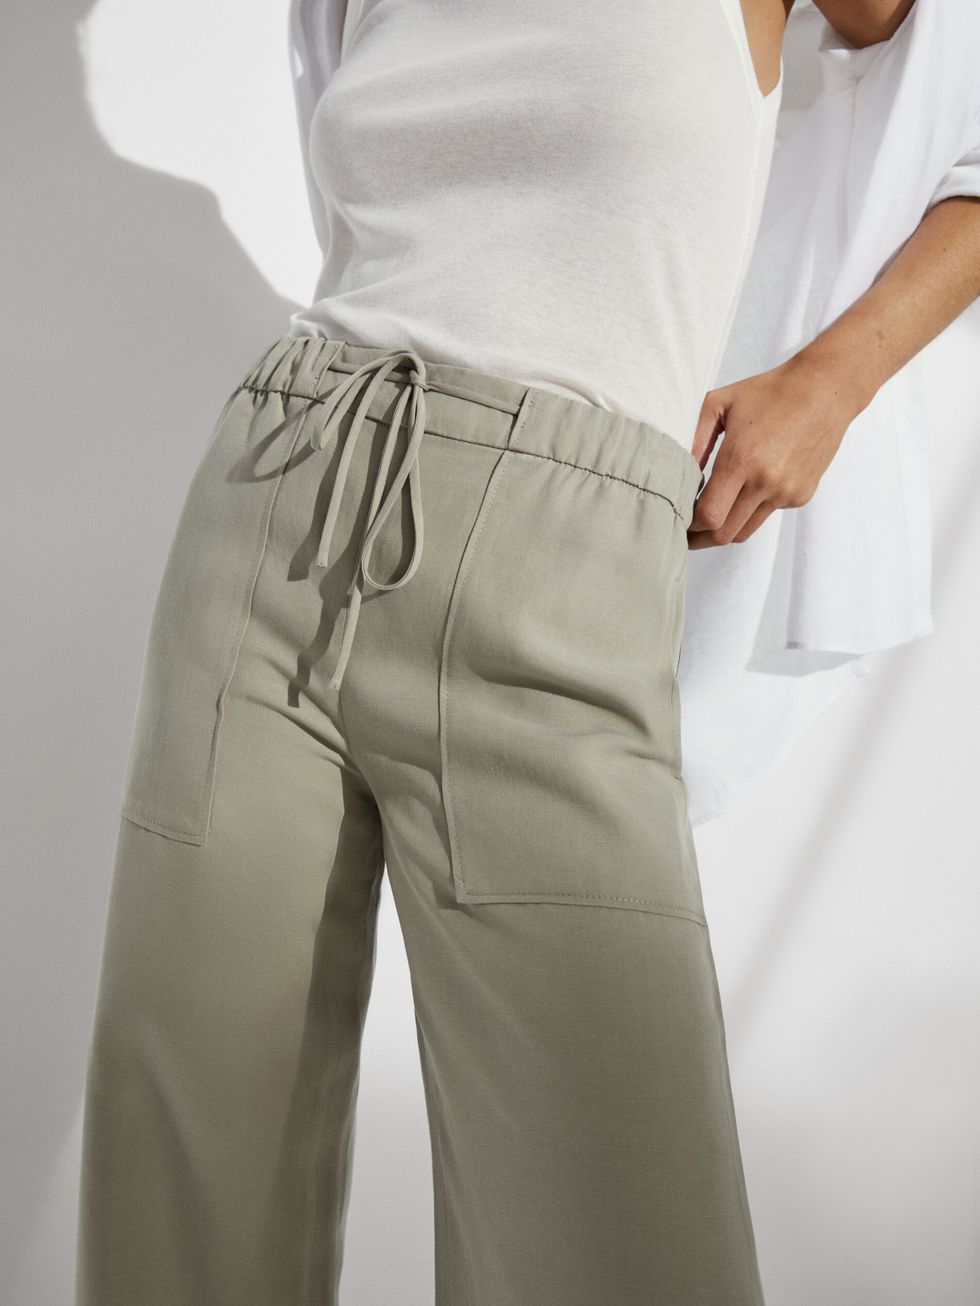 Decimos sí a los pantalones blancos gracias a estos de Massimo Dutti